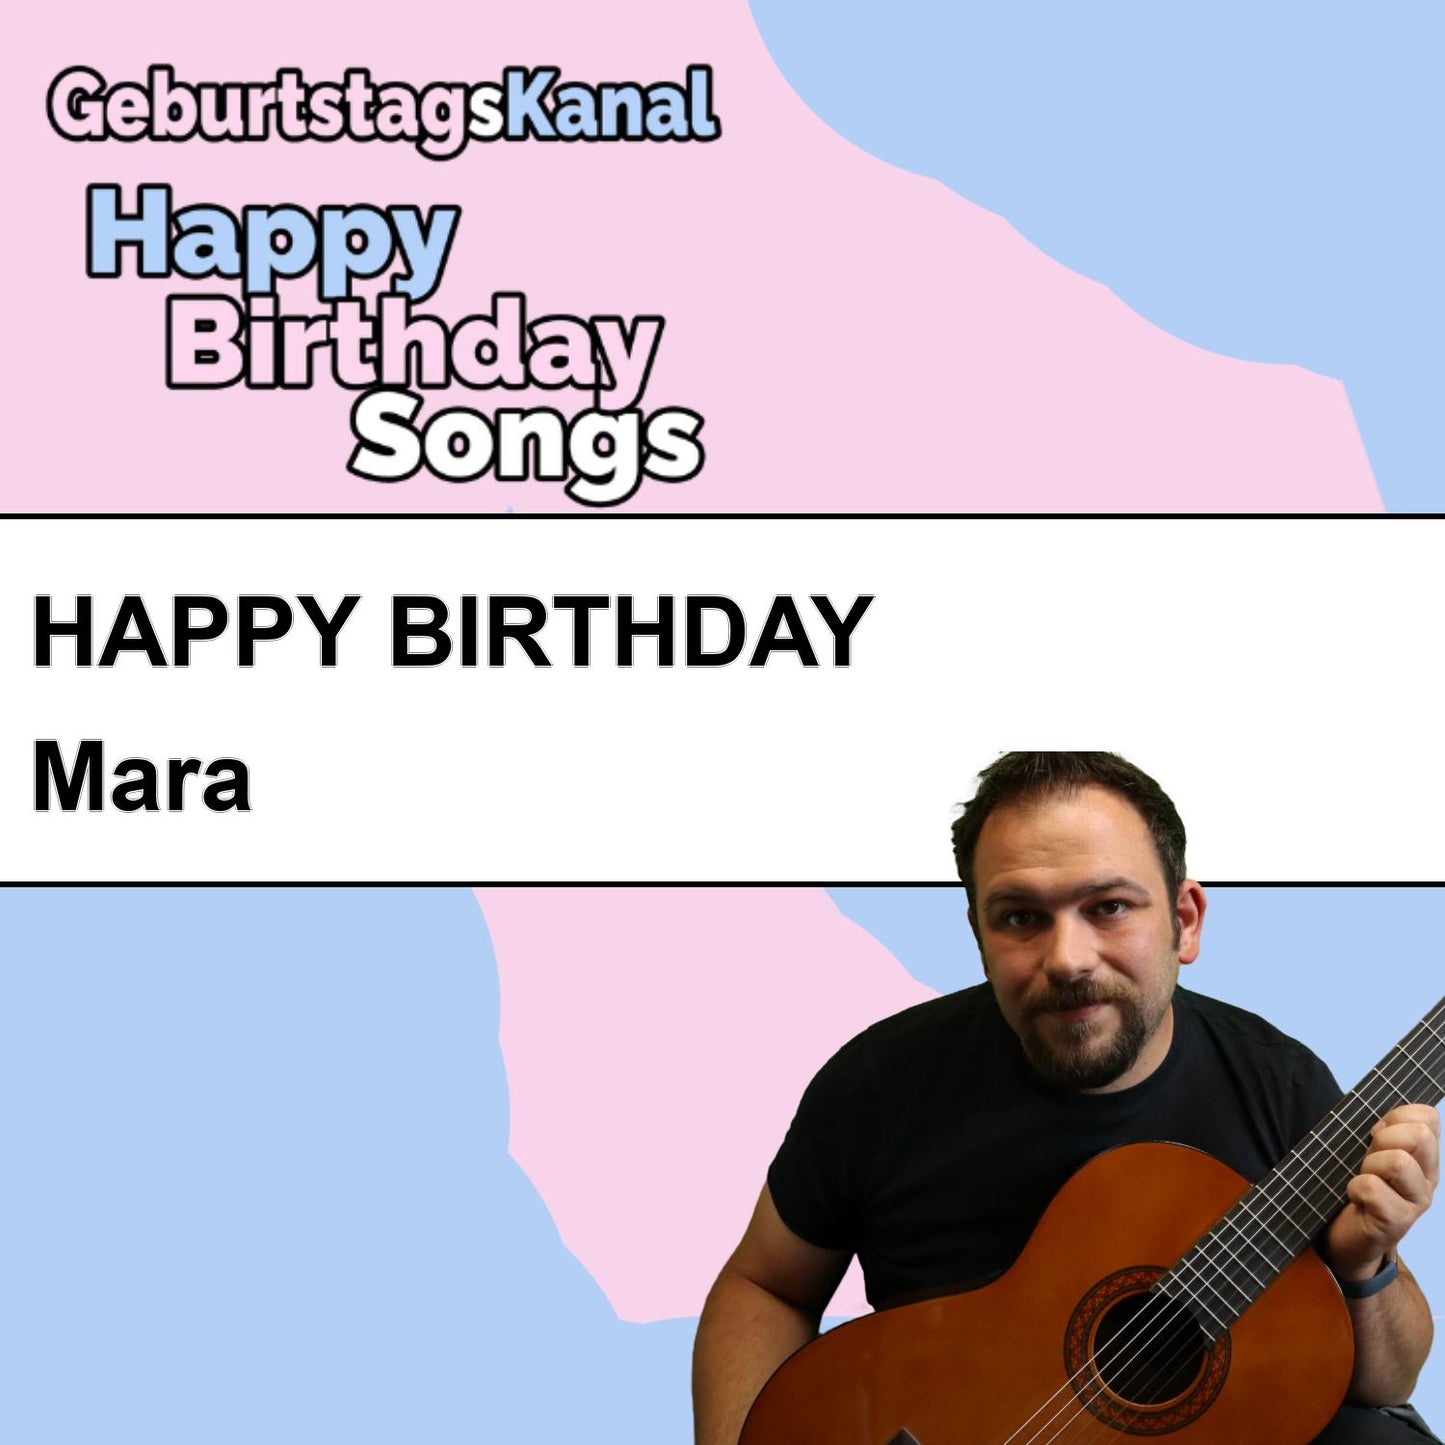 Produktbild Happy Birthday to you Mara mit Wunschgrußbotschaft